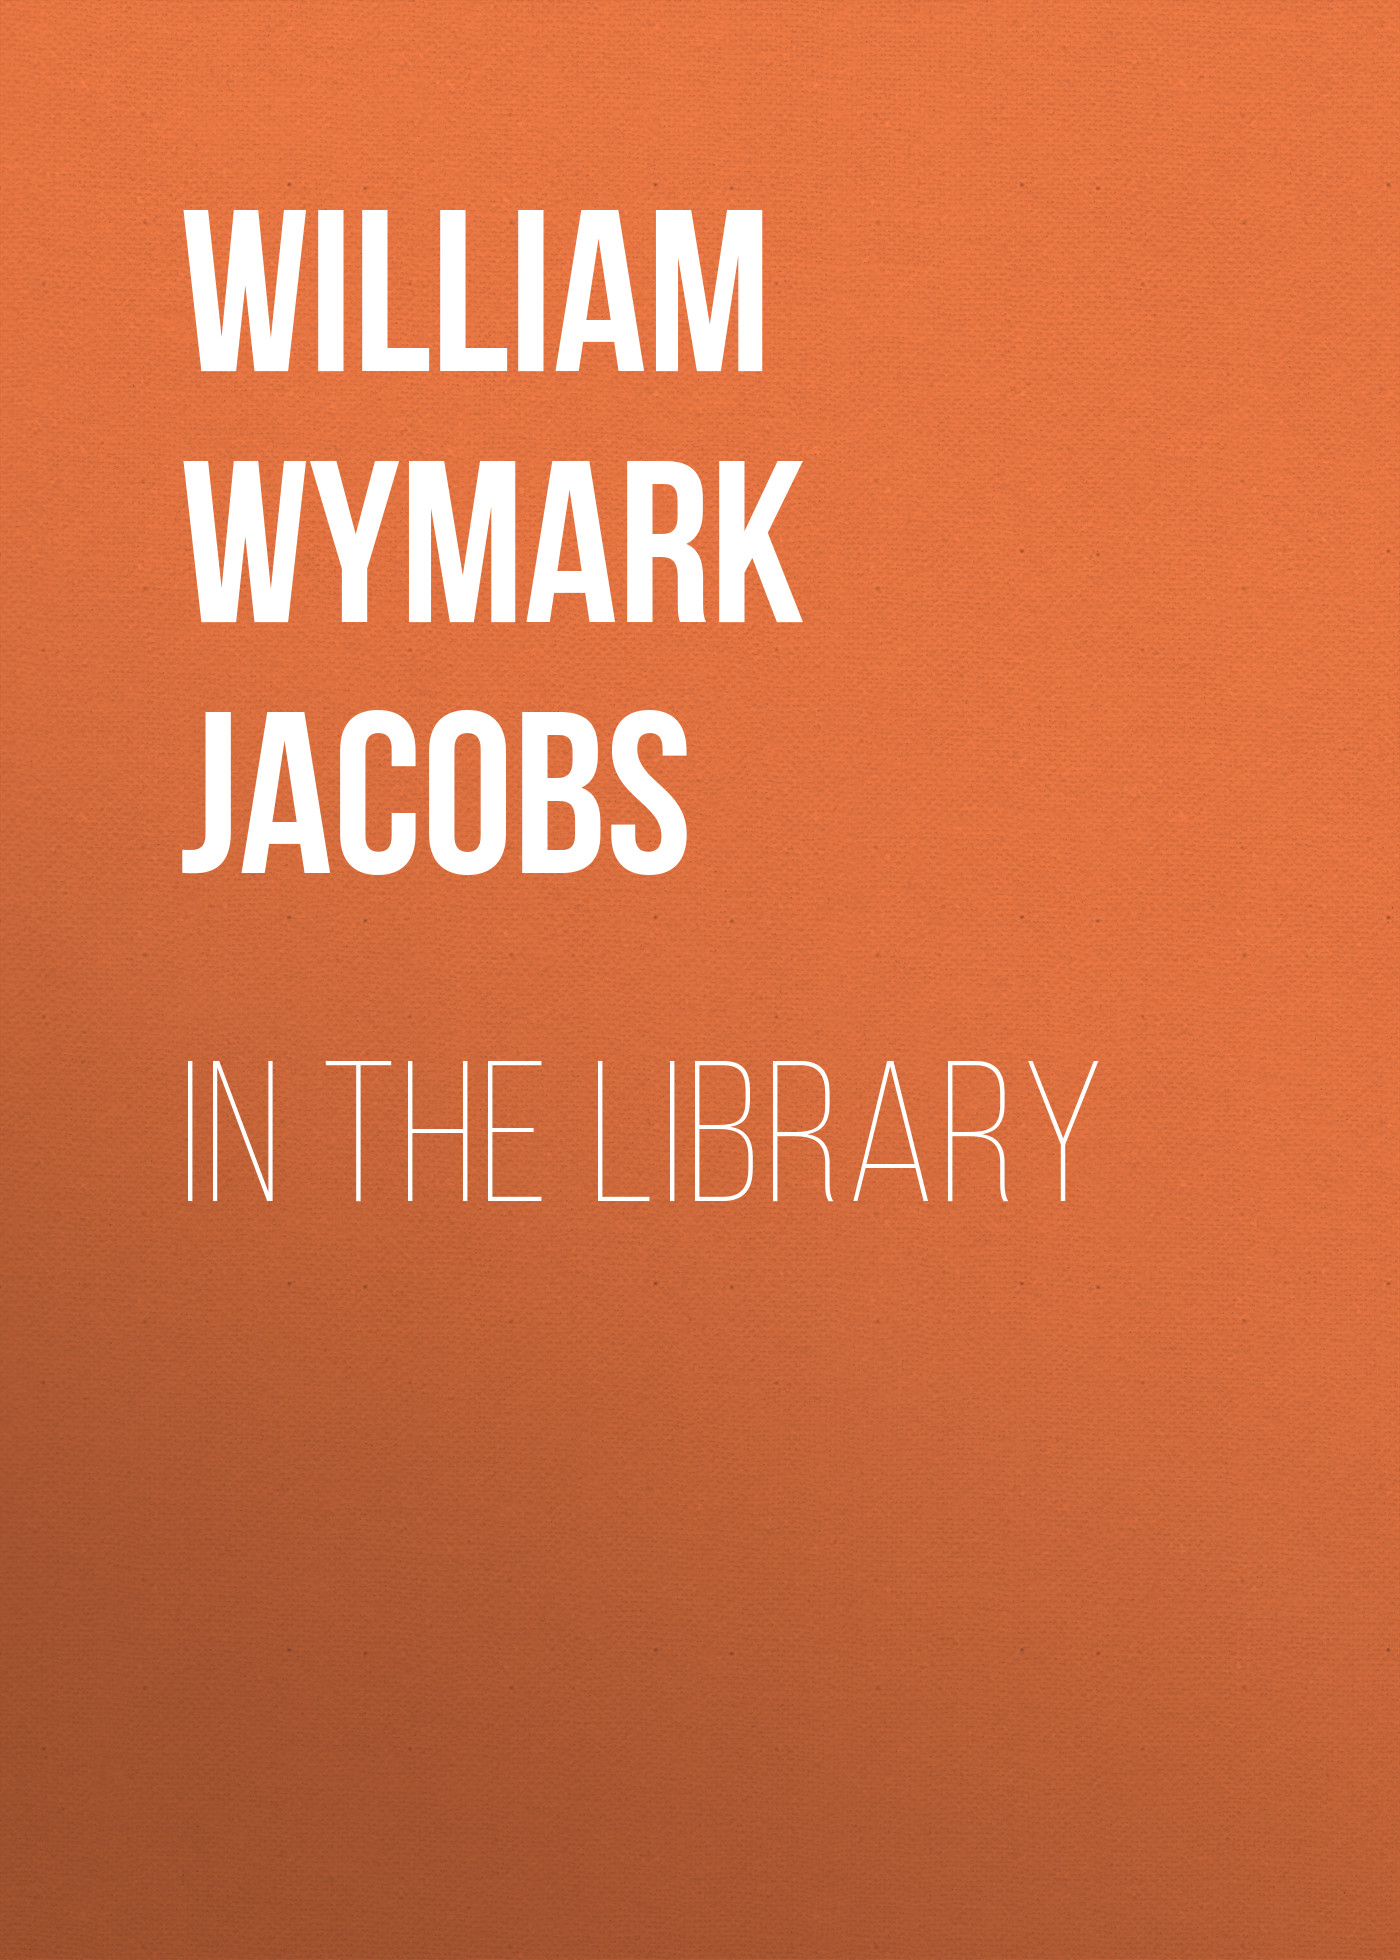 Книга In the Library из серии , созданная William Wymark Jacobs, может относится к жанру Зарубежная классика, Зарубежная старинная литература. Стоимость электронной книги In the Library с идентификатором 34841774 составляет 0 руб.